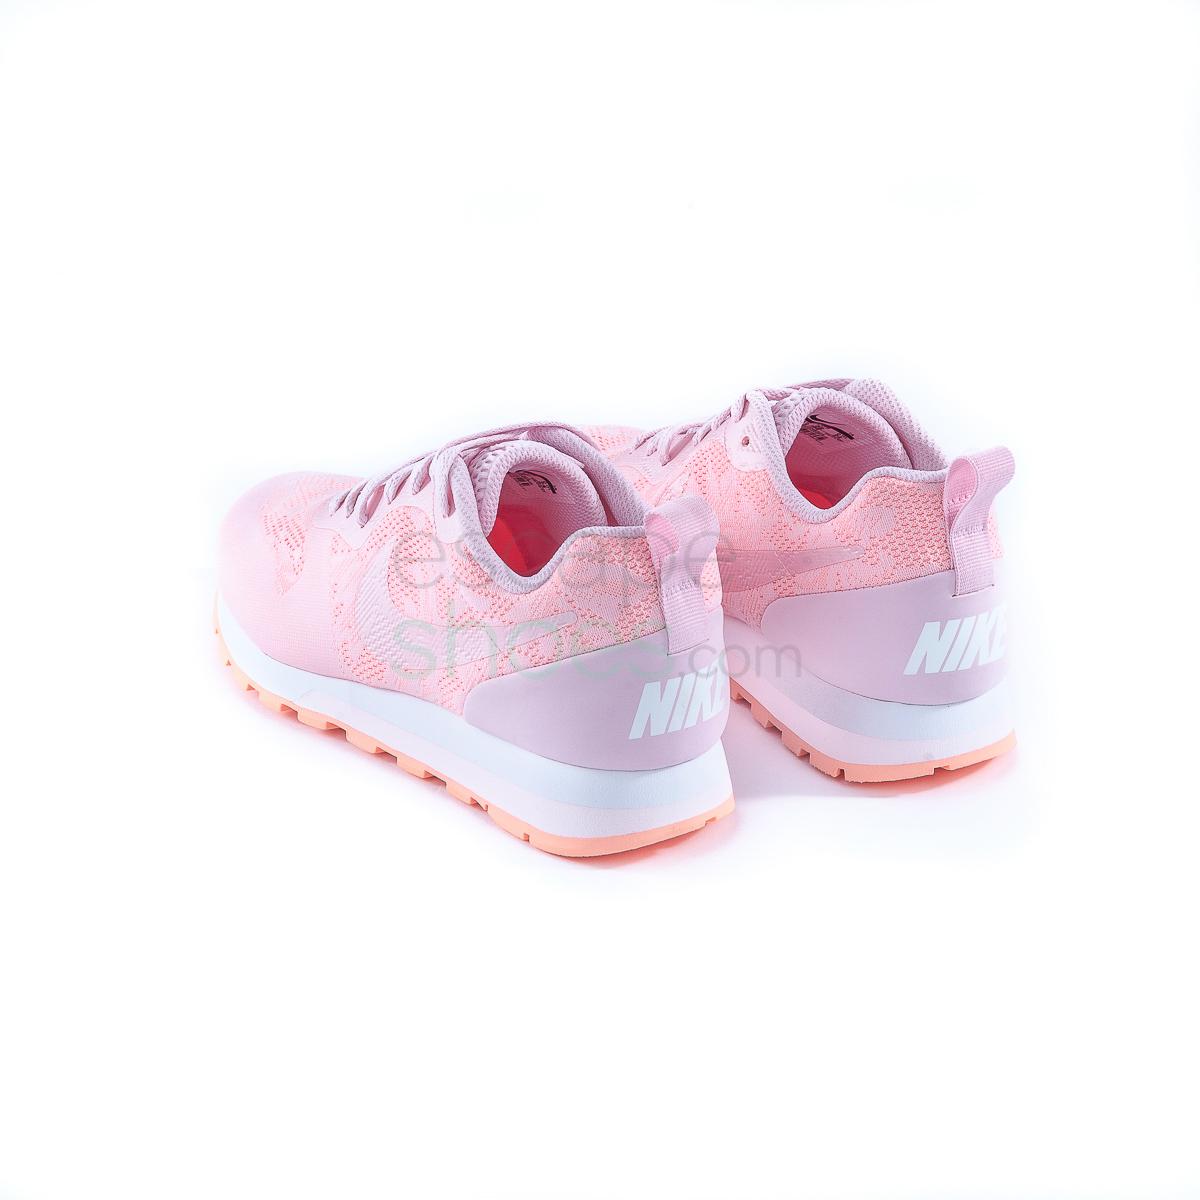 Sneakers NIKE MD Runner 2 Pink 902858